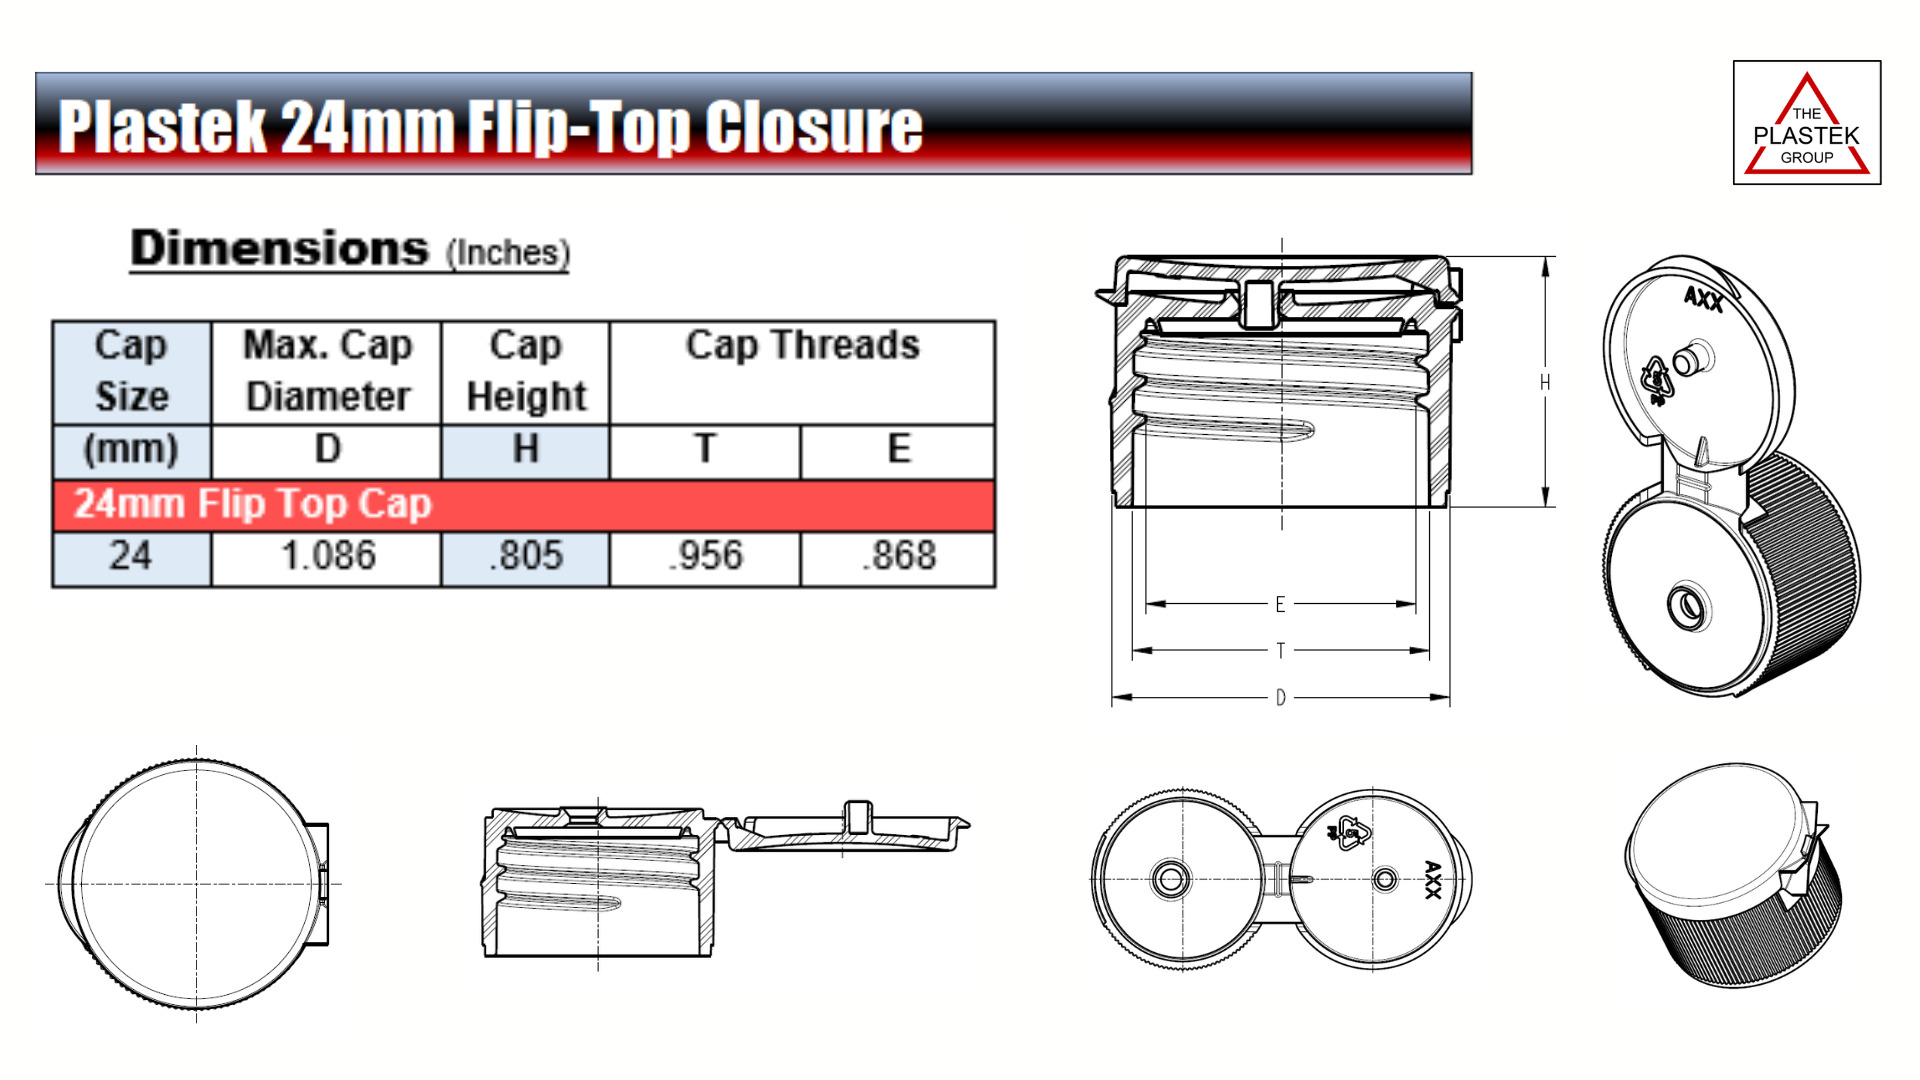 24mm Flip-Top Closure Dimensions